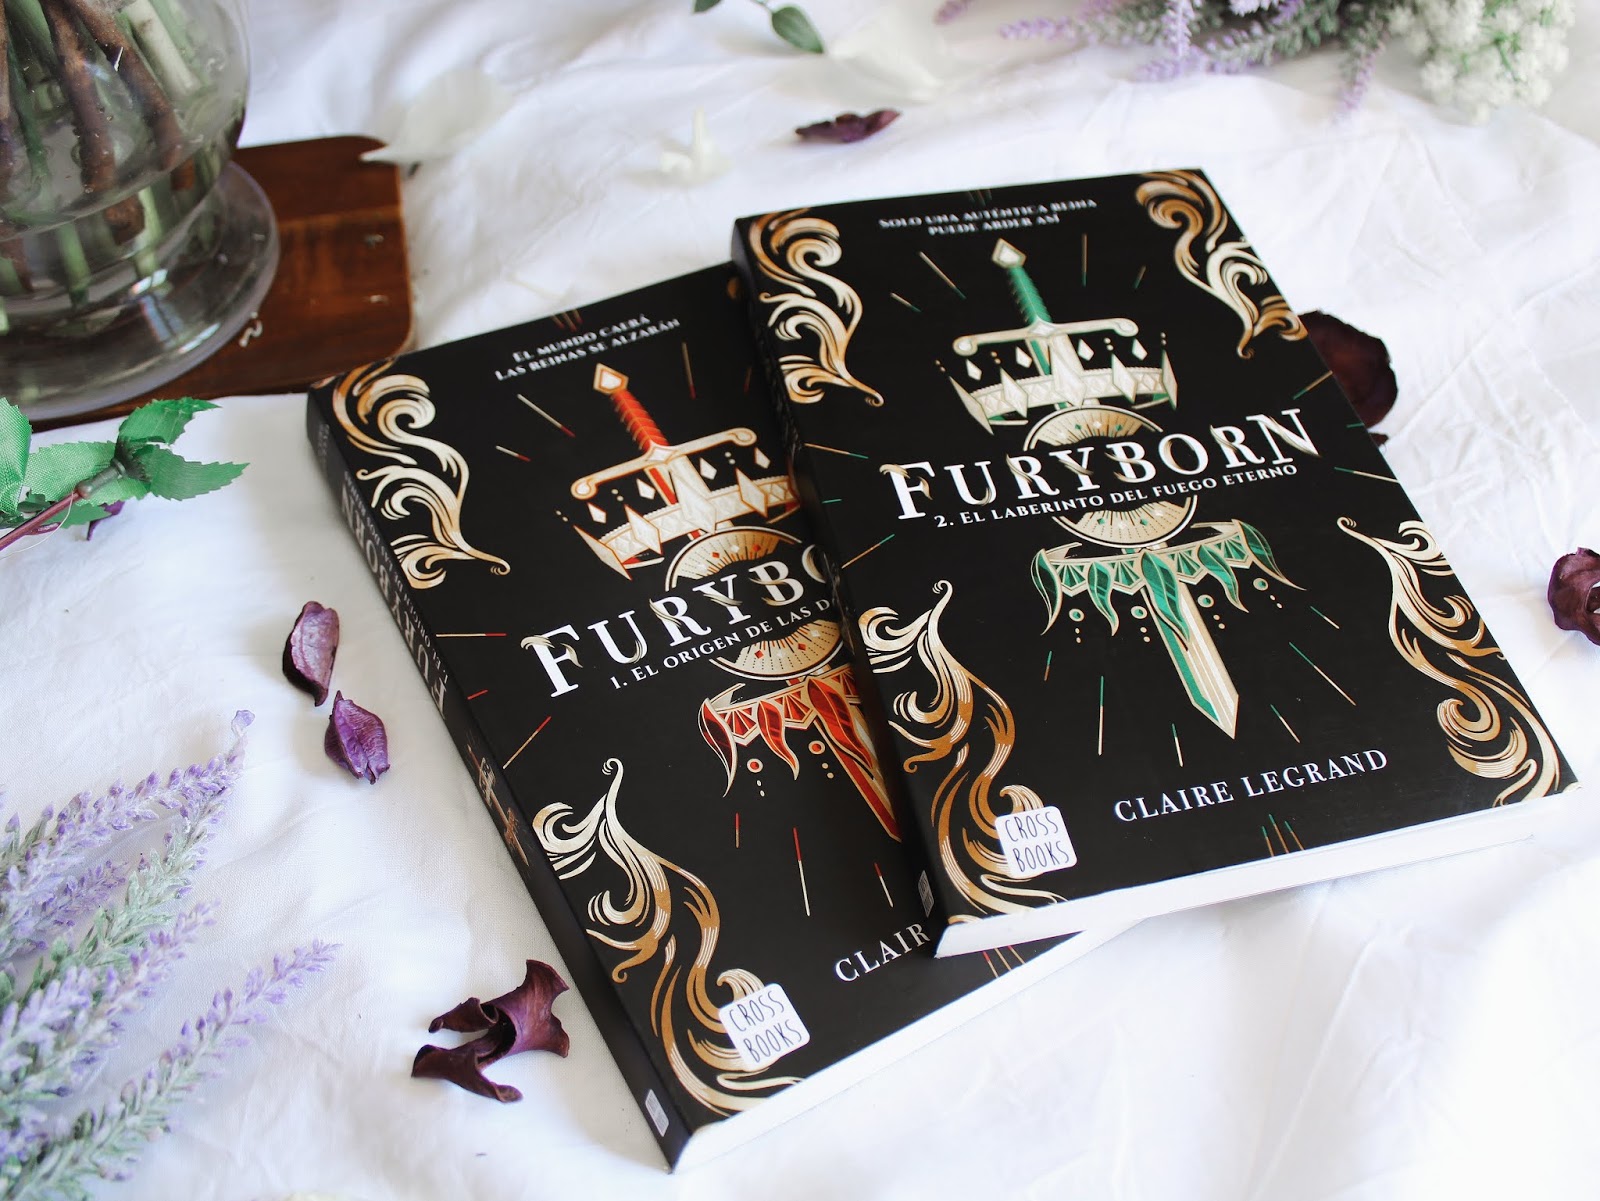 Libro: Furyborn 2: El Laberinto del Fuego Eterno por Claire Legrand